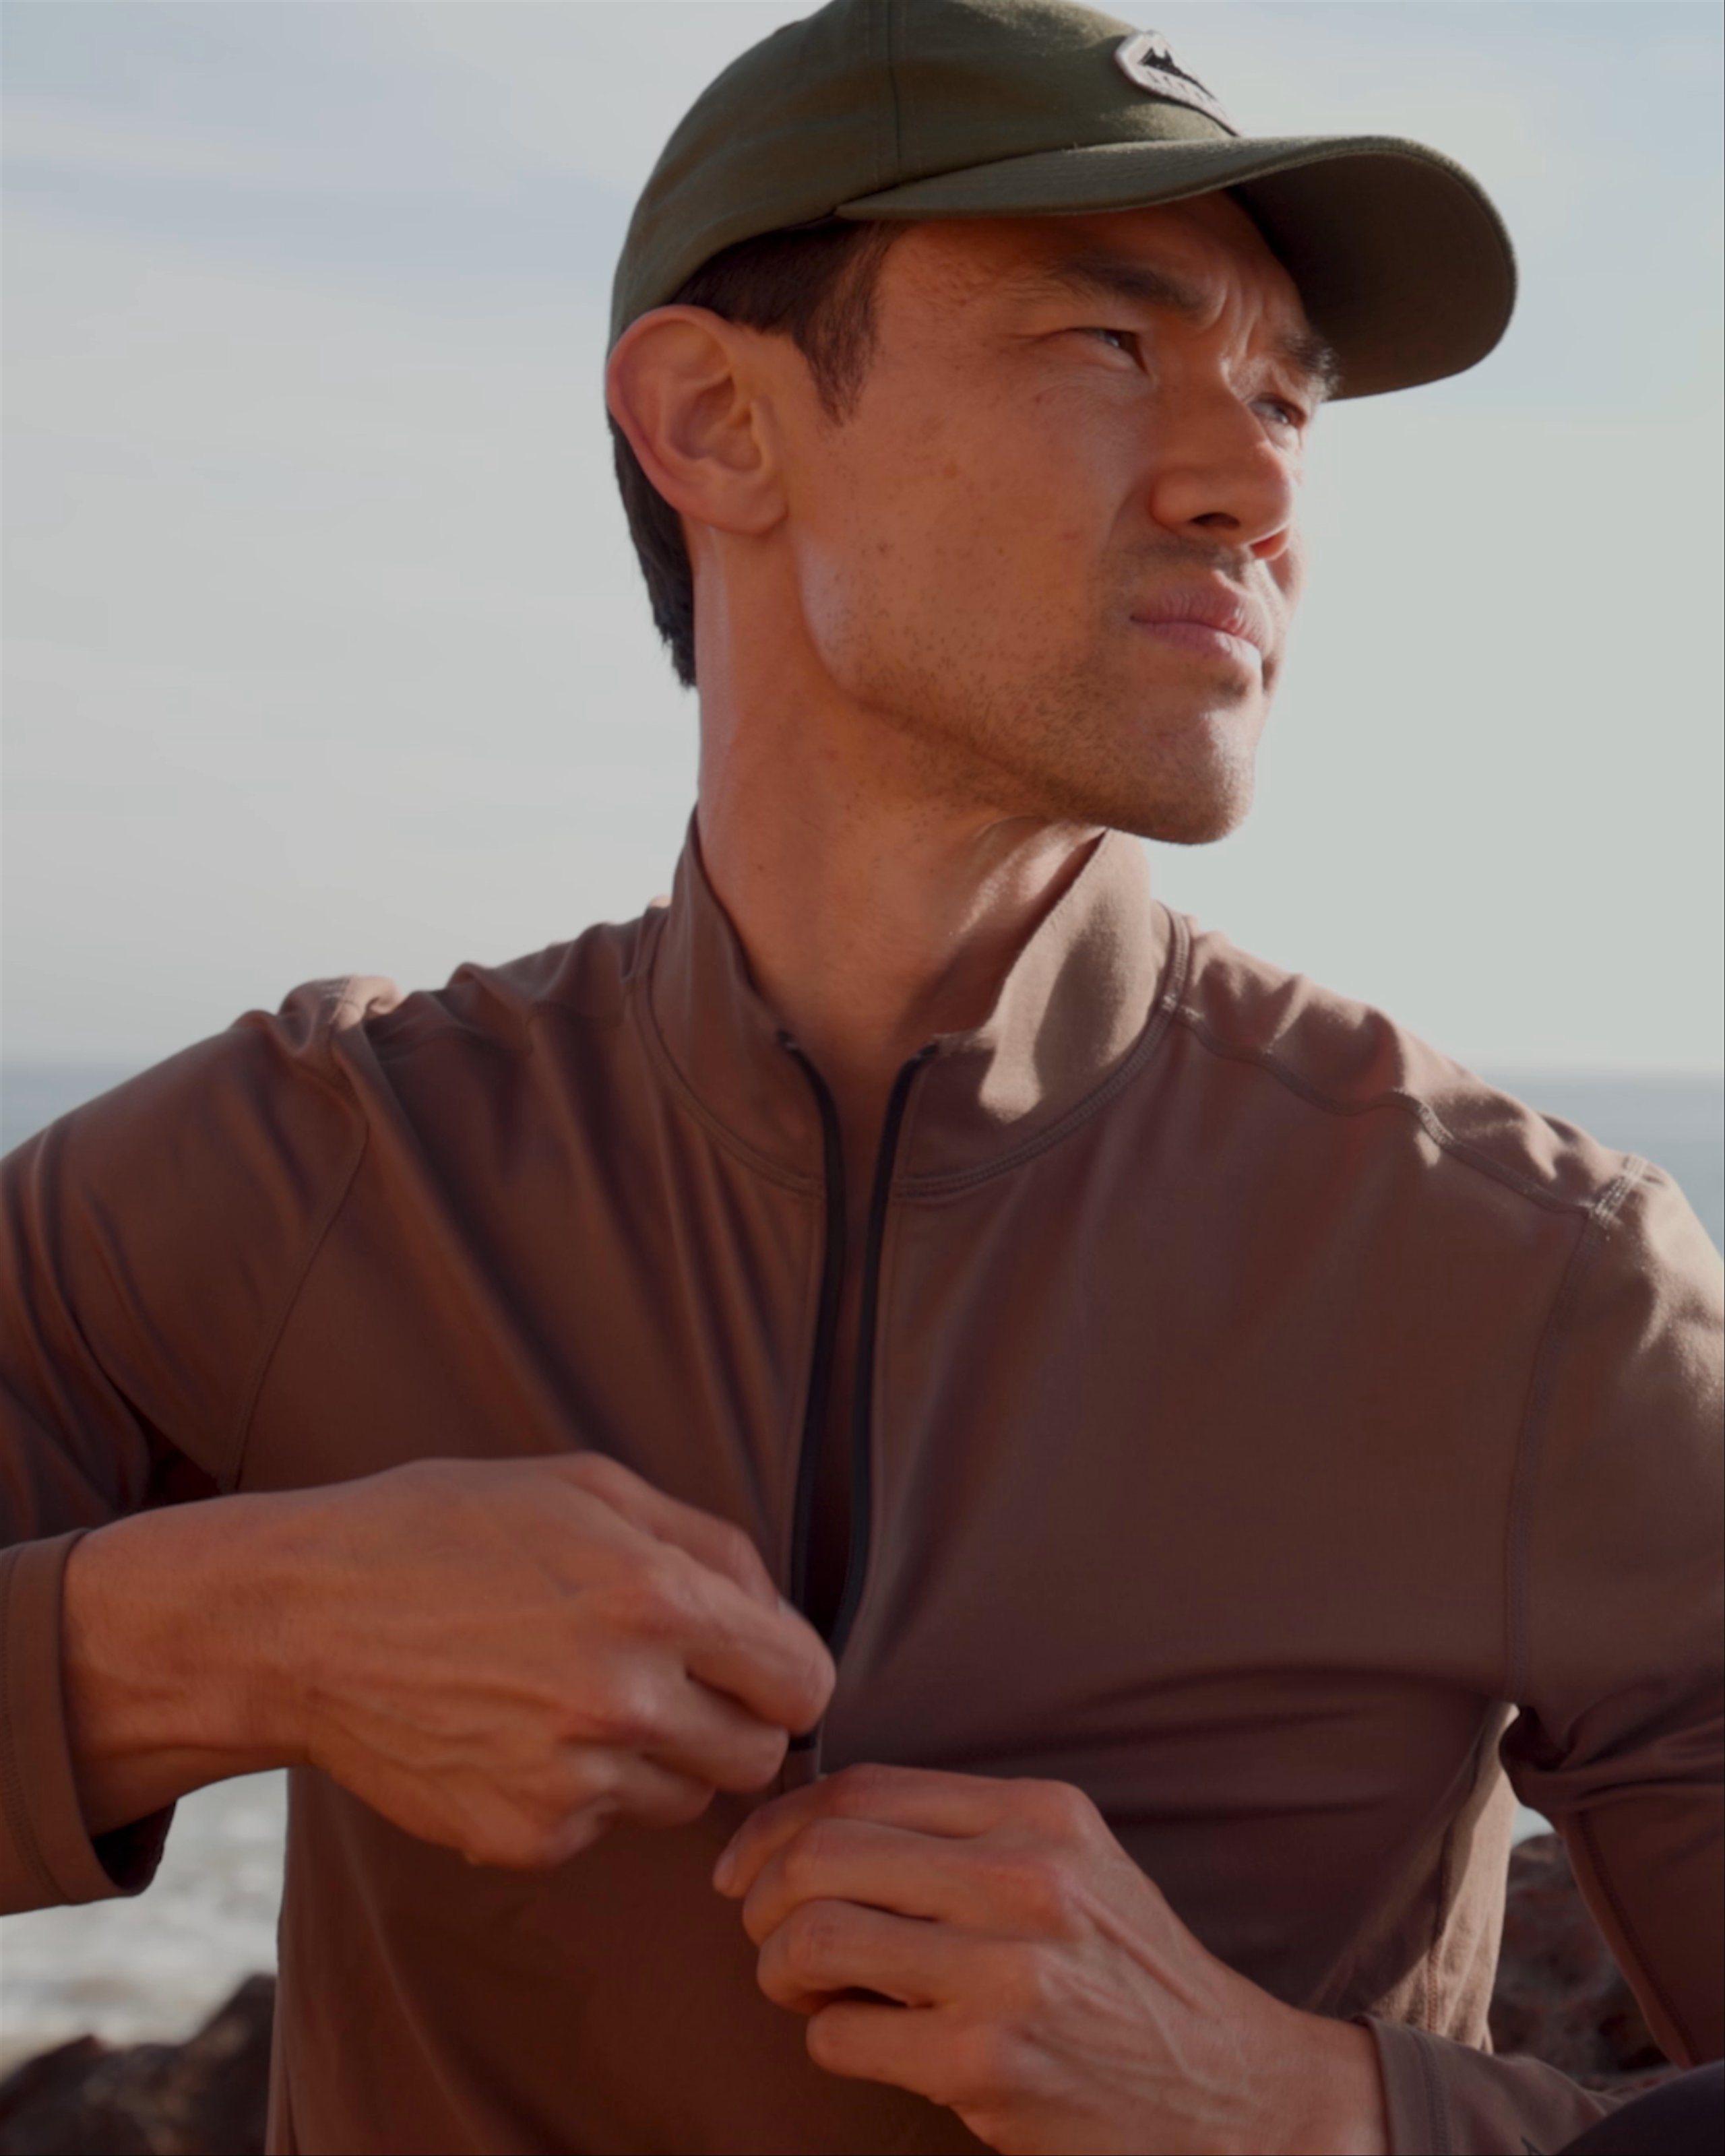 Man in Trek Articulated Half-Zip zipping up shirt with ocean in background